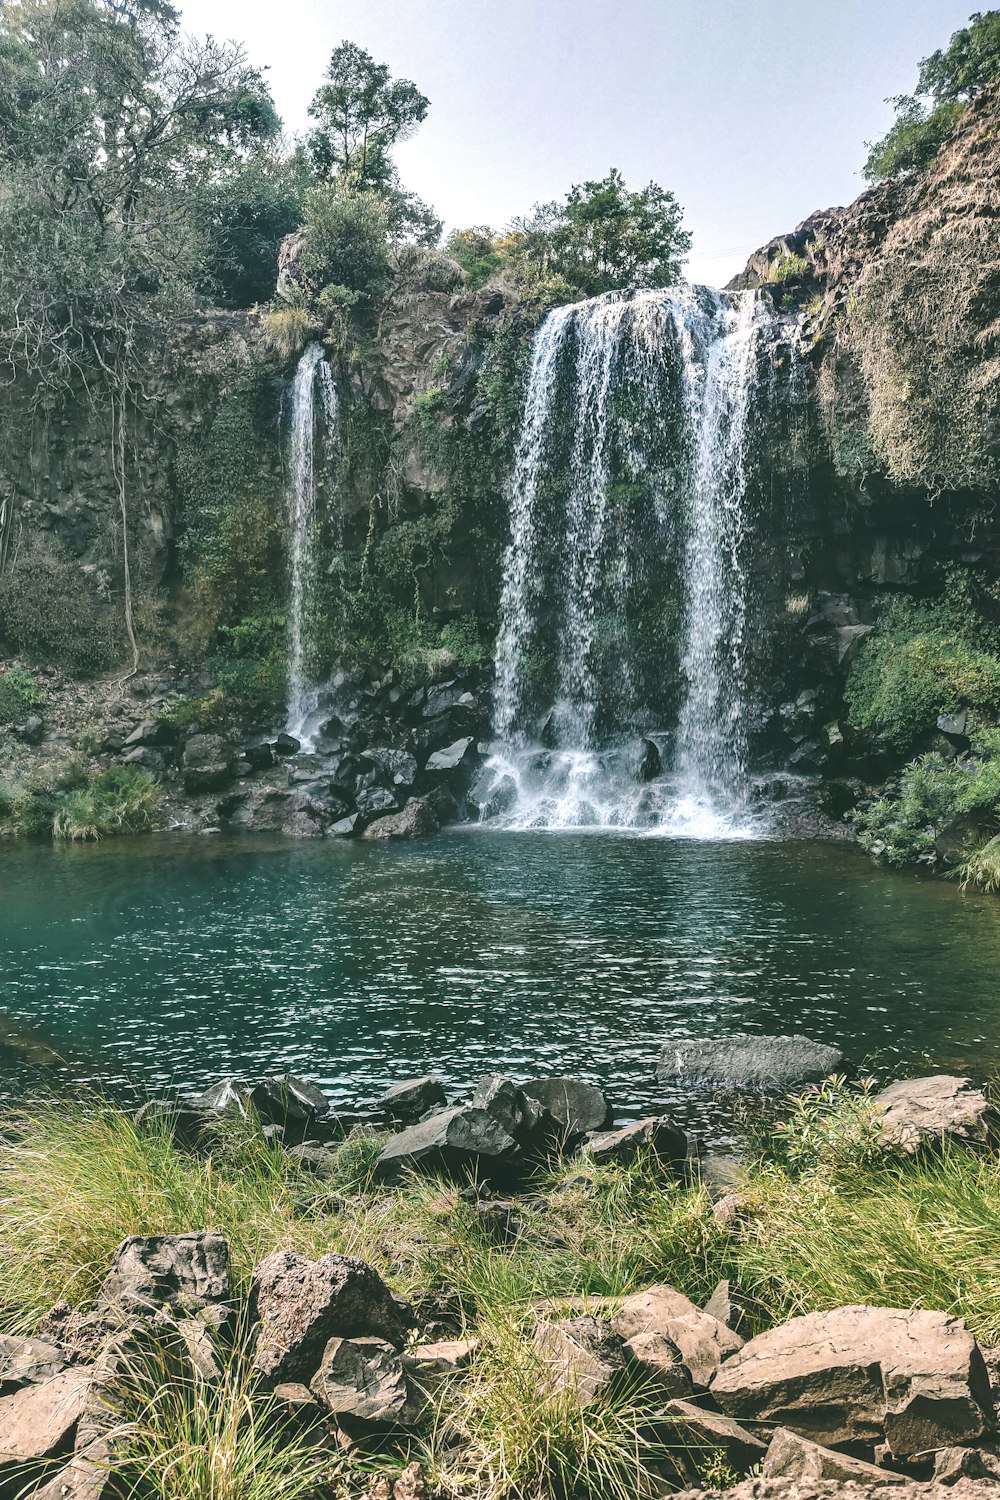 Una grande cascata si trova nel mezzo di uno specchio d'acqua